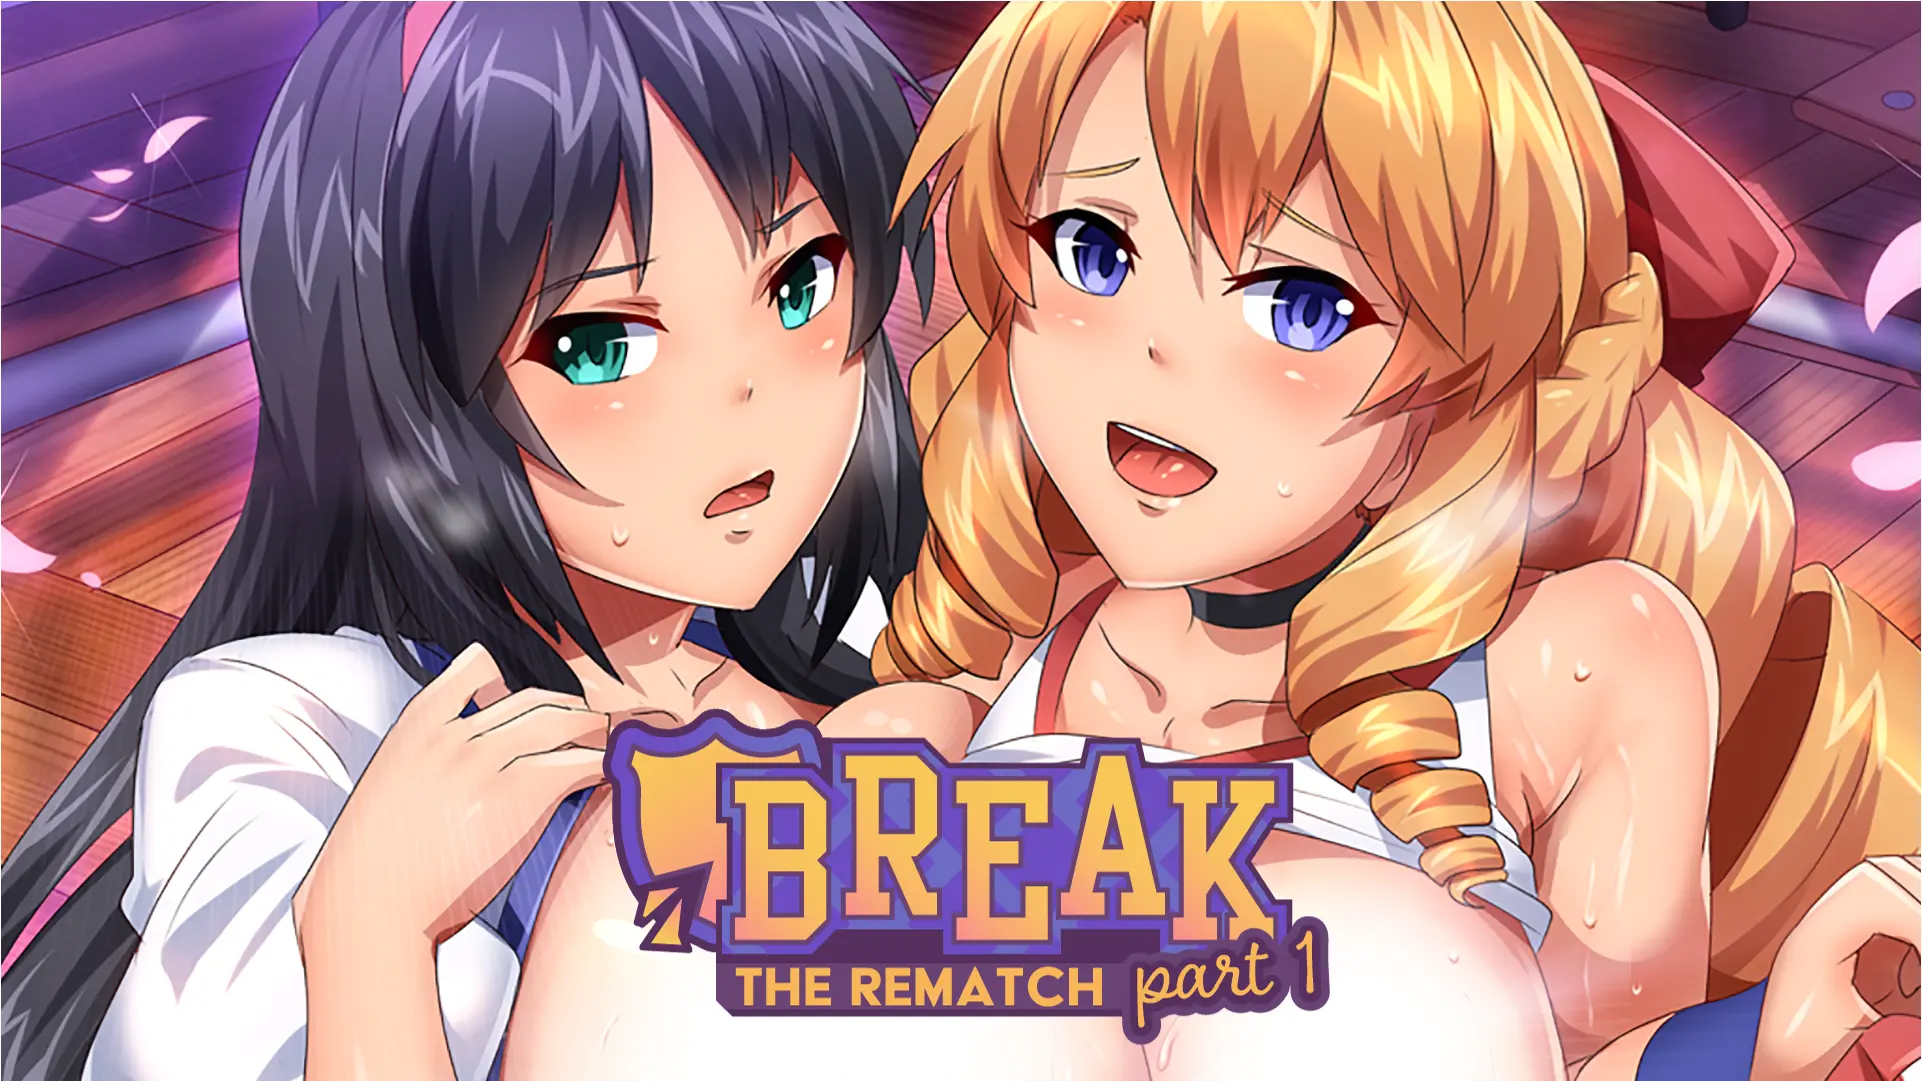 Break! The Rematch Part 1 main image